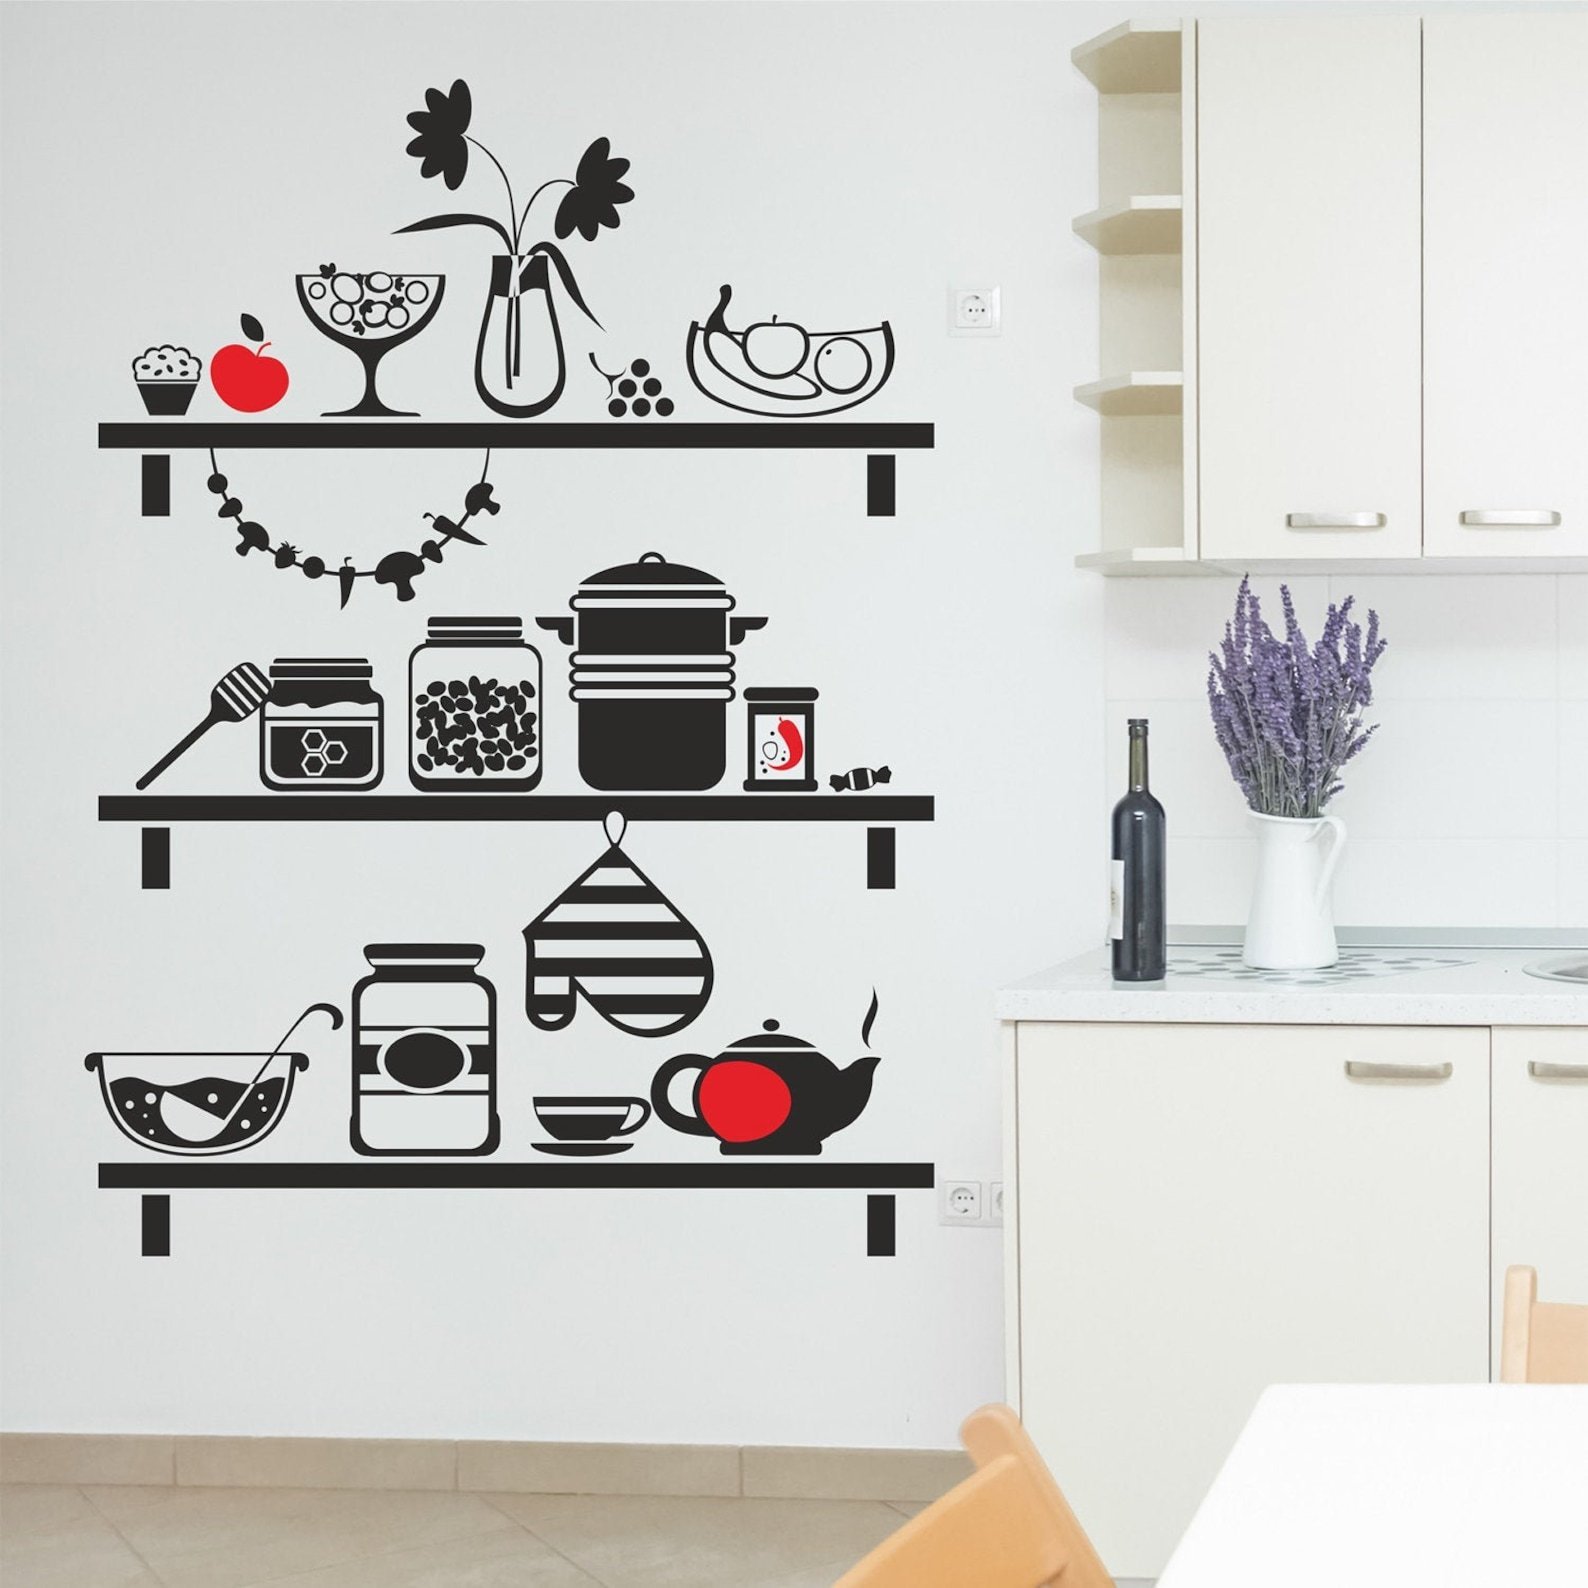 Трафареты для стен: новый дизайн кухни за 5 минут